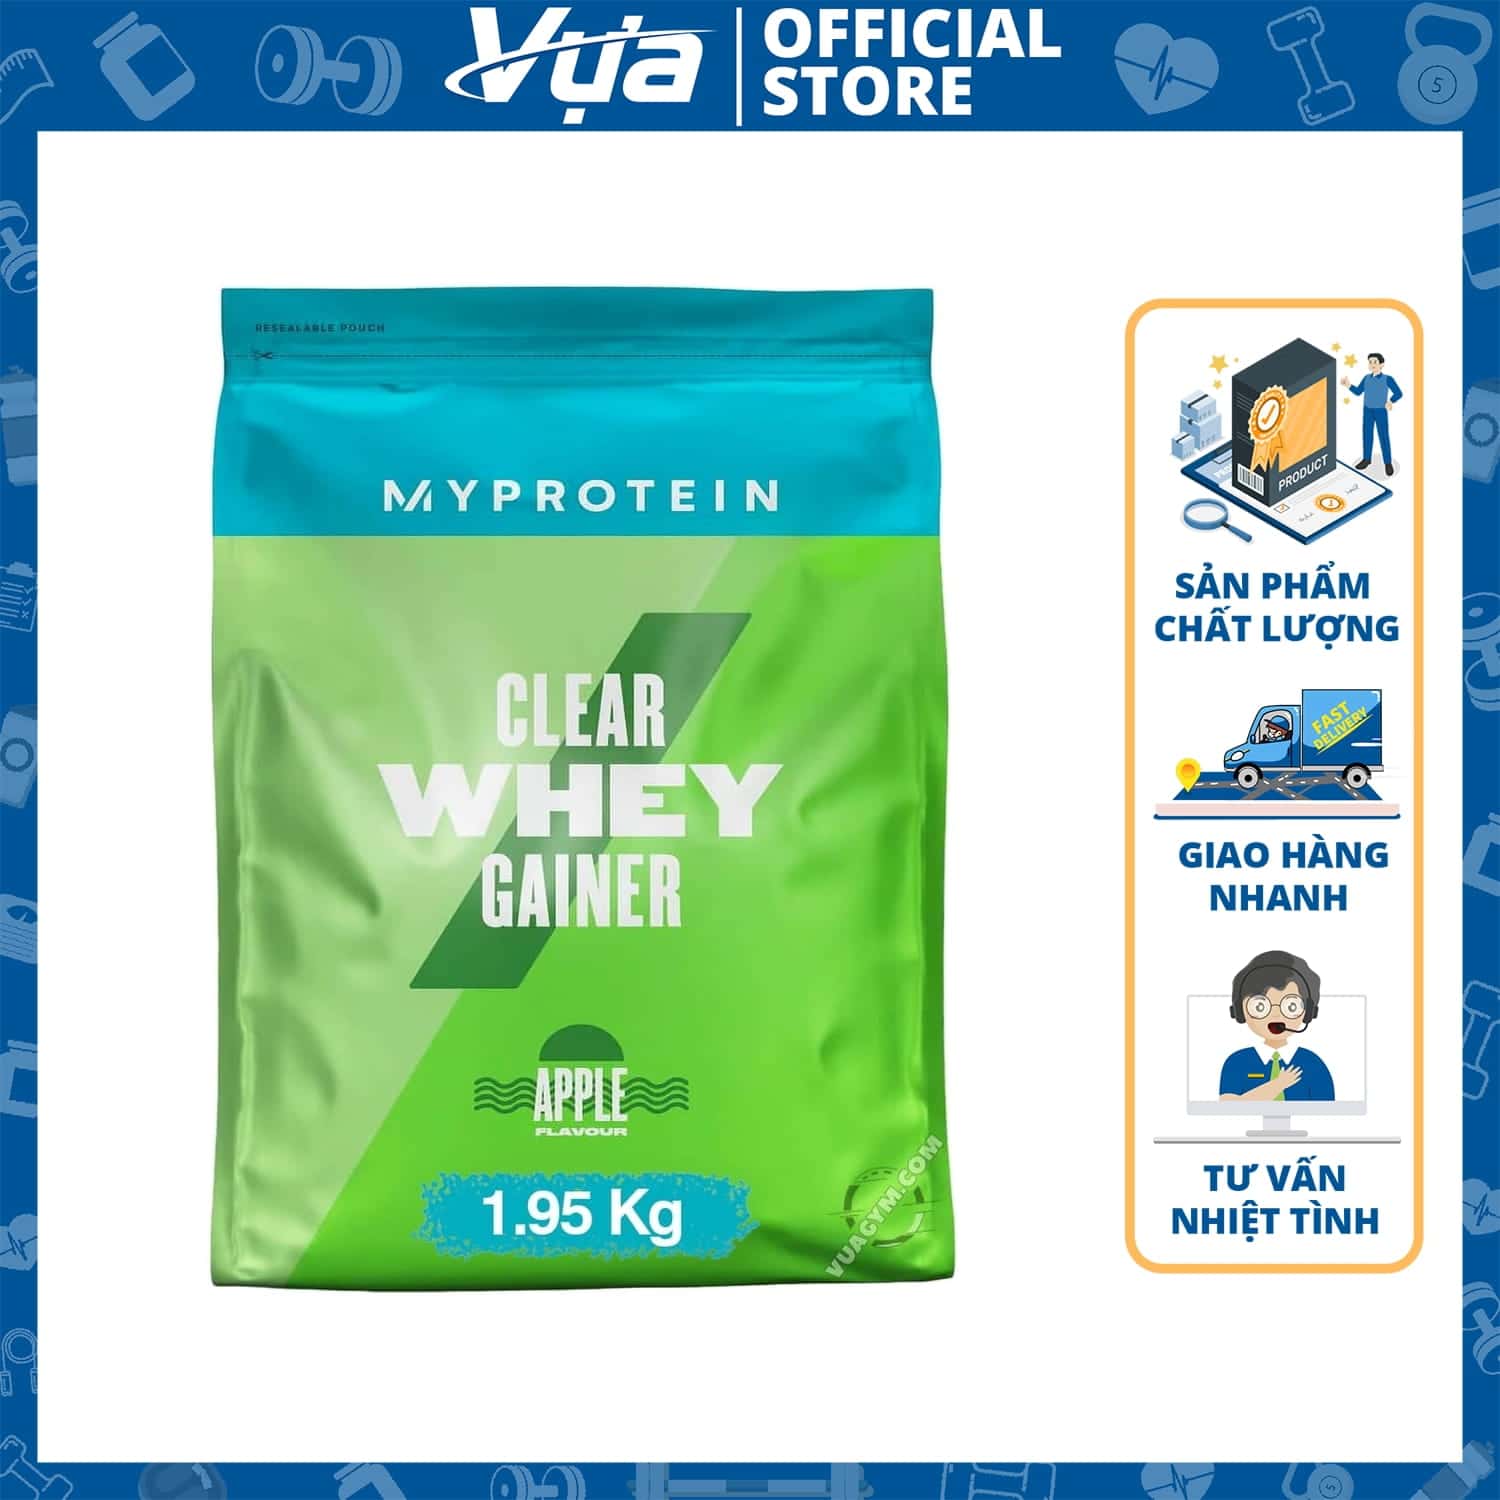 Myprotein - Clear Whey Gainer 1.95 Kg - Thực Phẩm Bổ Sung Tăng Cân Chính